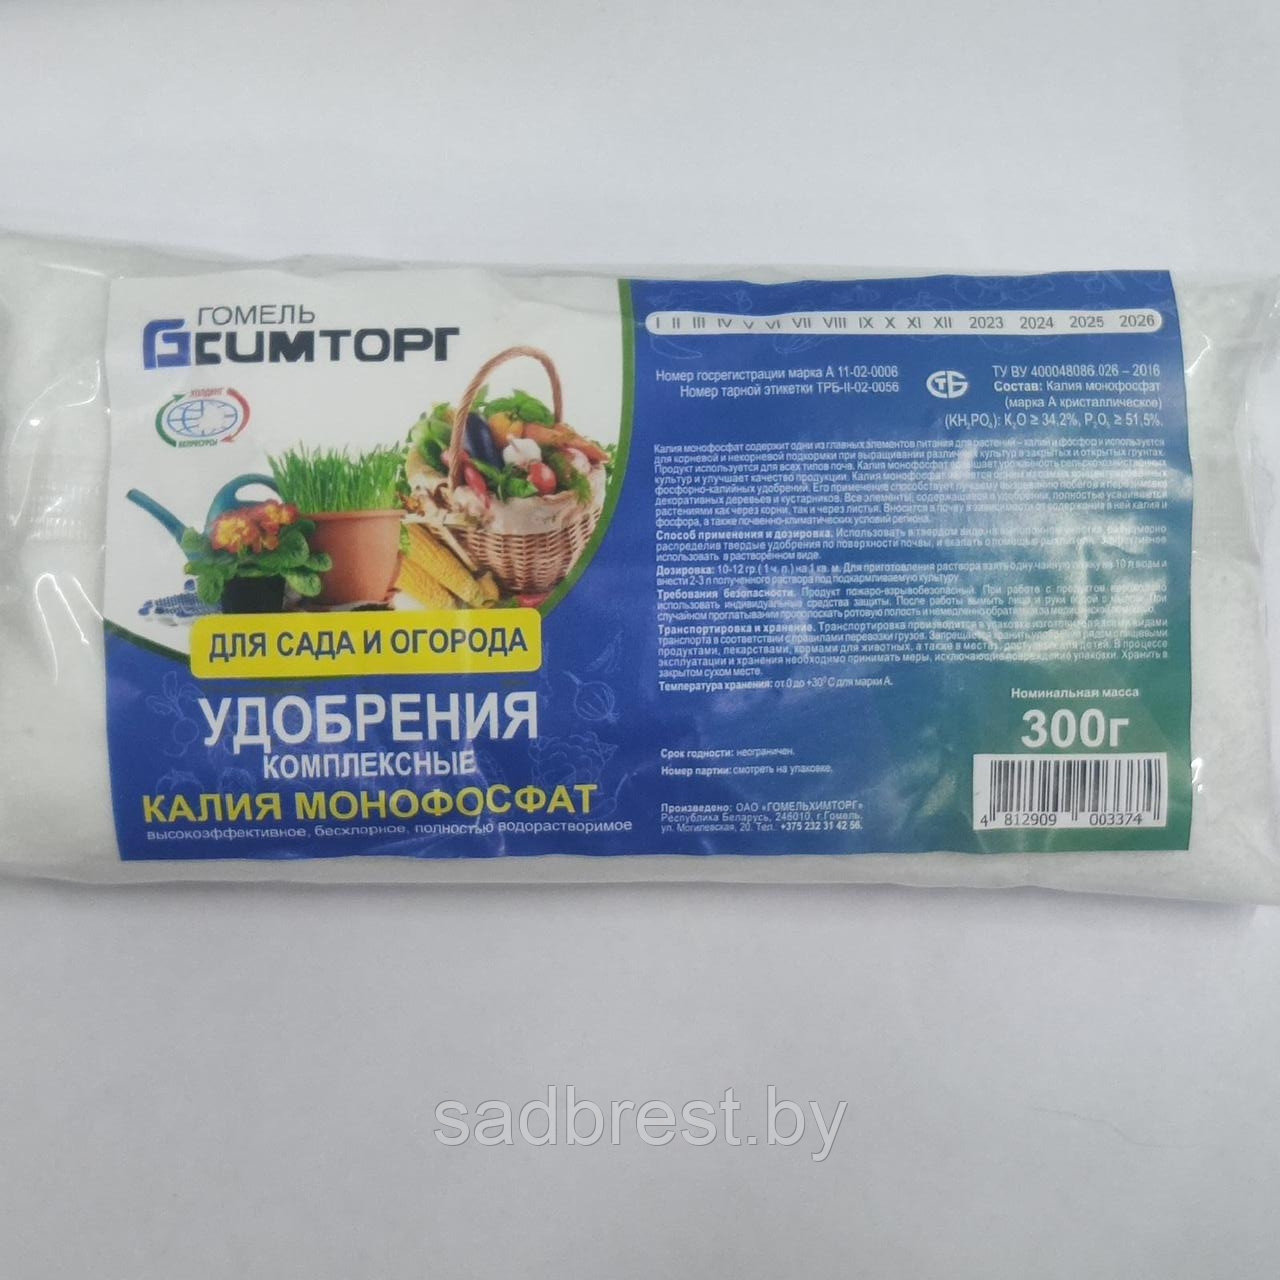 Удобрение Монофосфат калия (Калийно-фосфорное удобрение), 300 гр